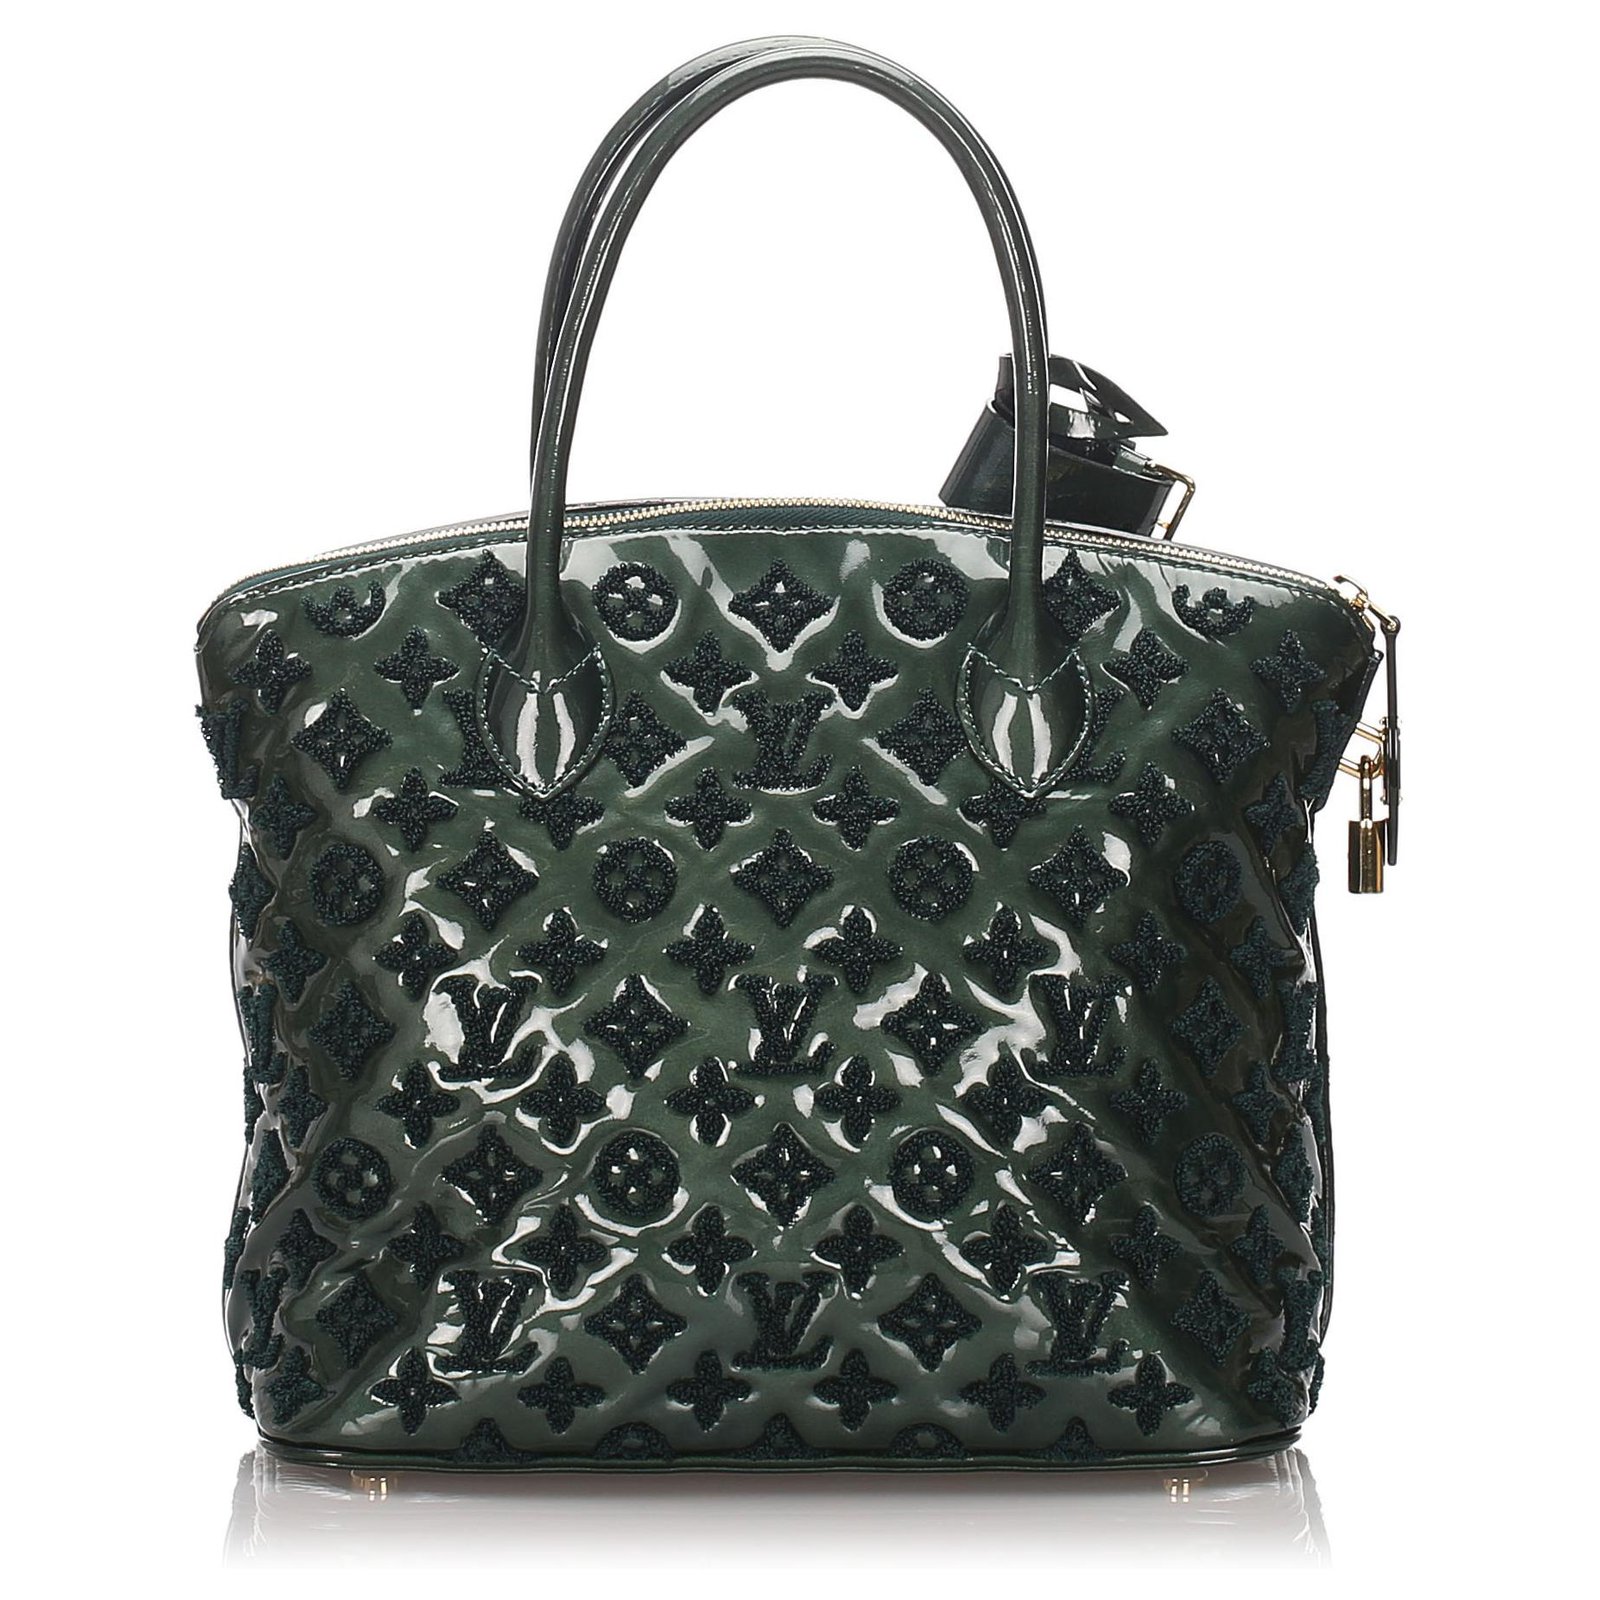 Louis Vuitton Monogram Fascination Lockit Bag - Black Totes